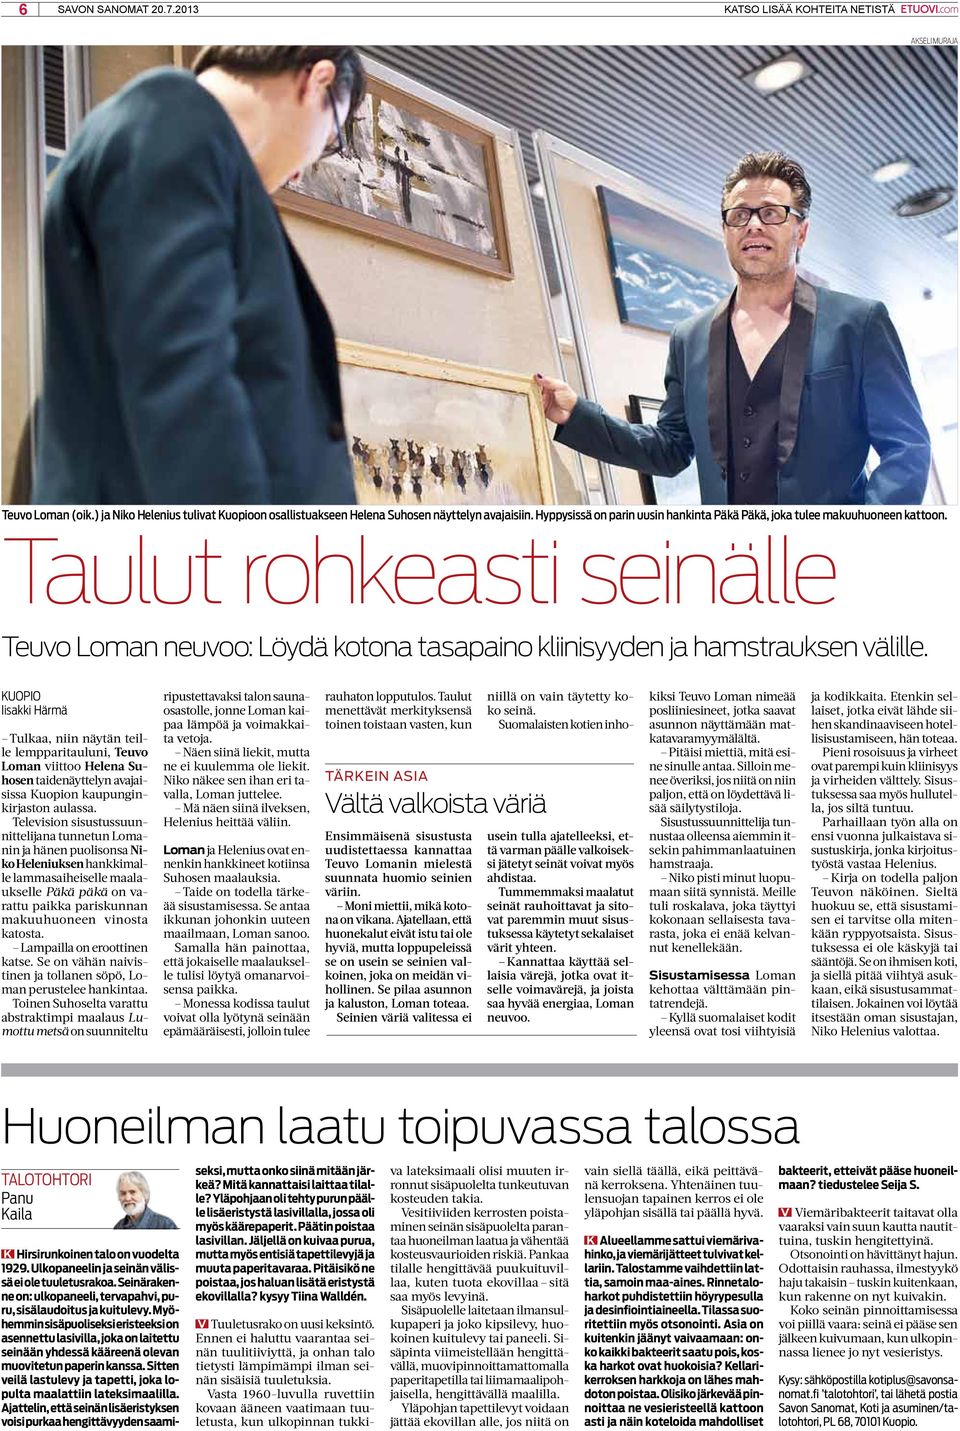 Kuopio Iisakki Härmä Tulkaa, niin näytän teille lempparitauluni, Teuvo Loman viittoo Helena Suhosen taidenäyttelyn avajaisissa Kuopion kaupunginkirjaston aulassa.